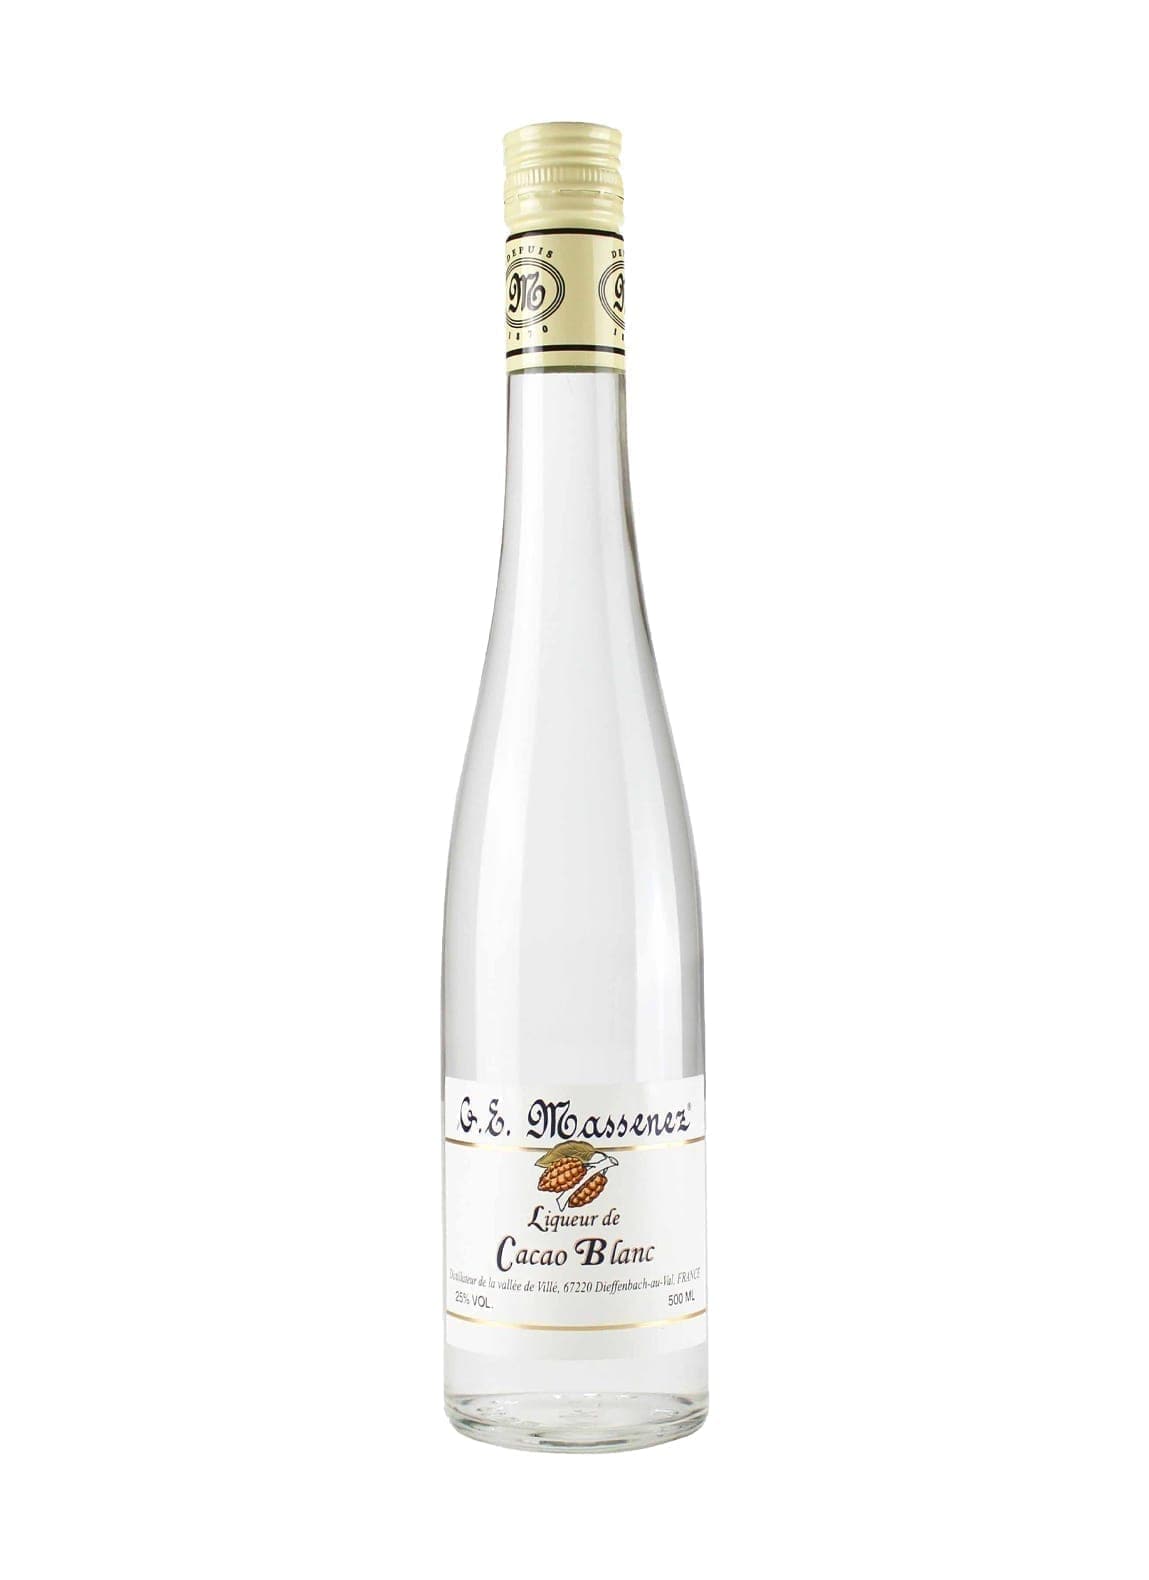 Massenez Liqueur White Cocao (White Chocolate) 25% 500ml | Liqueurs | Shop online at Spirits of France